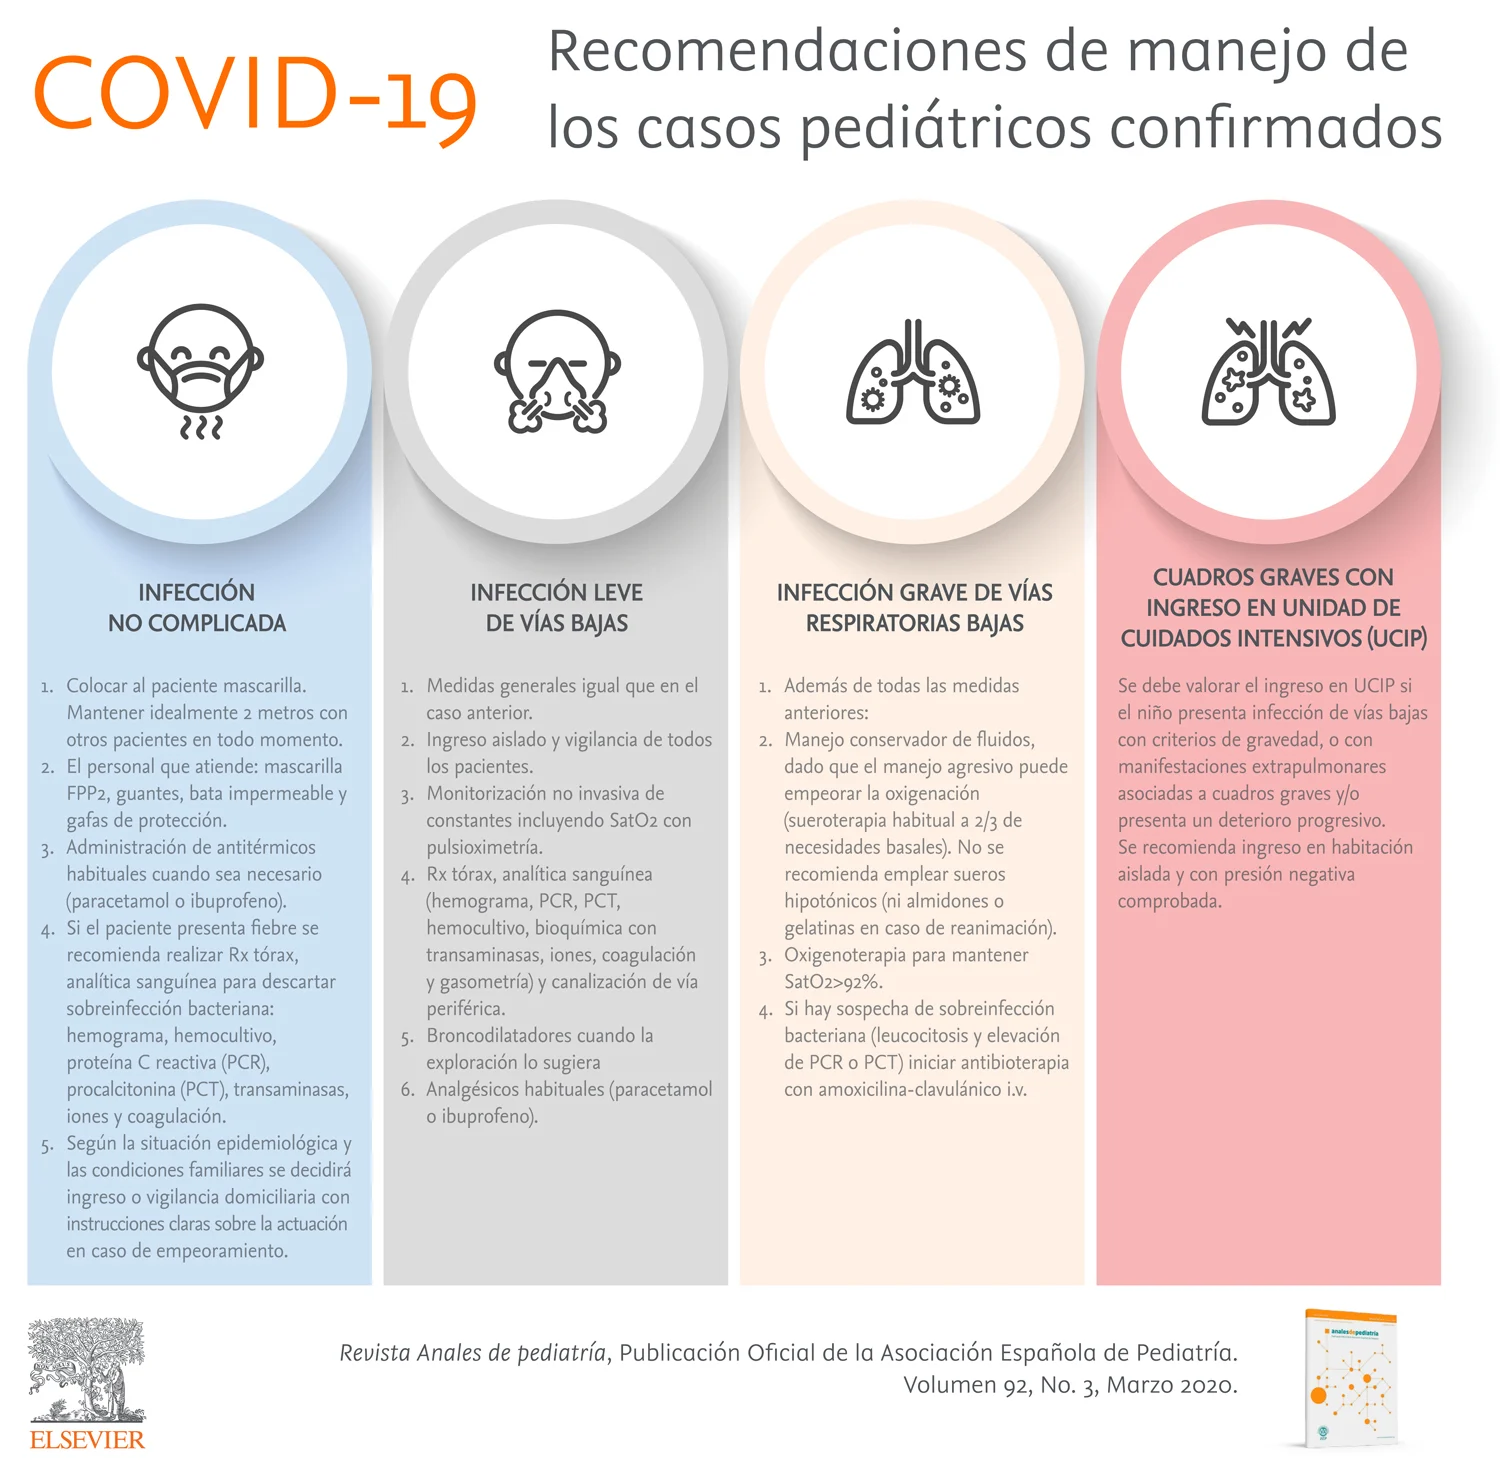 Recomendacionesdel manejo de COVID 19 casos pediatricos